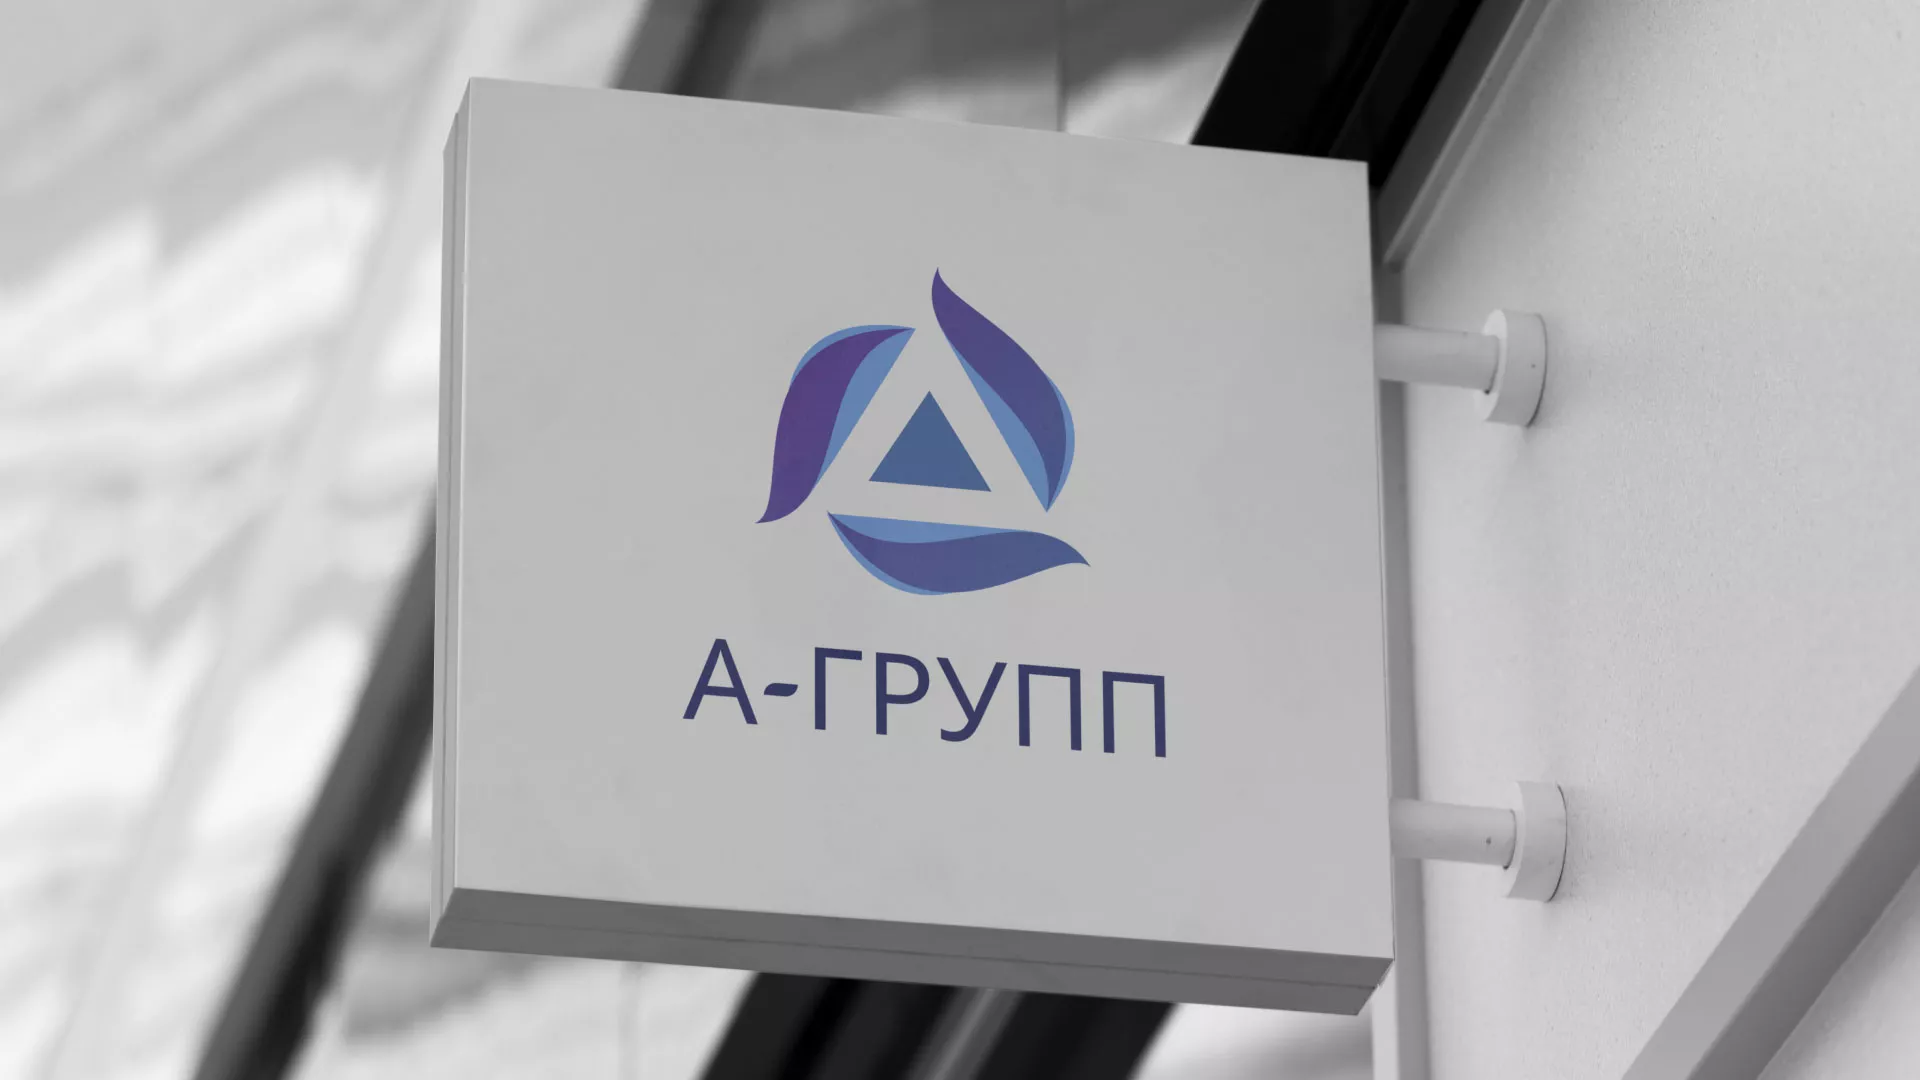 Создание логотипа компании «А-ГРУПП» в Болотном